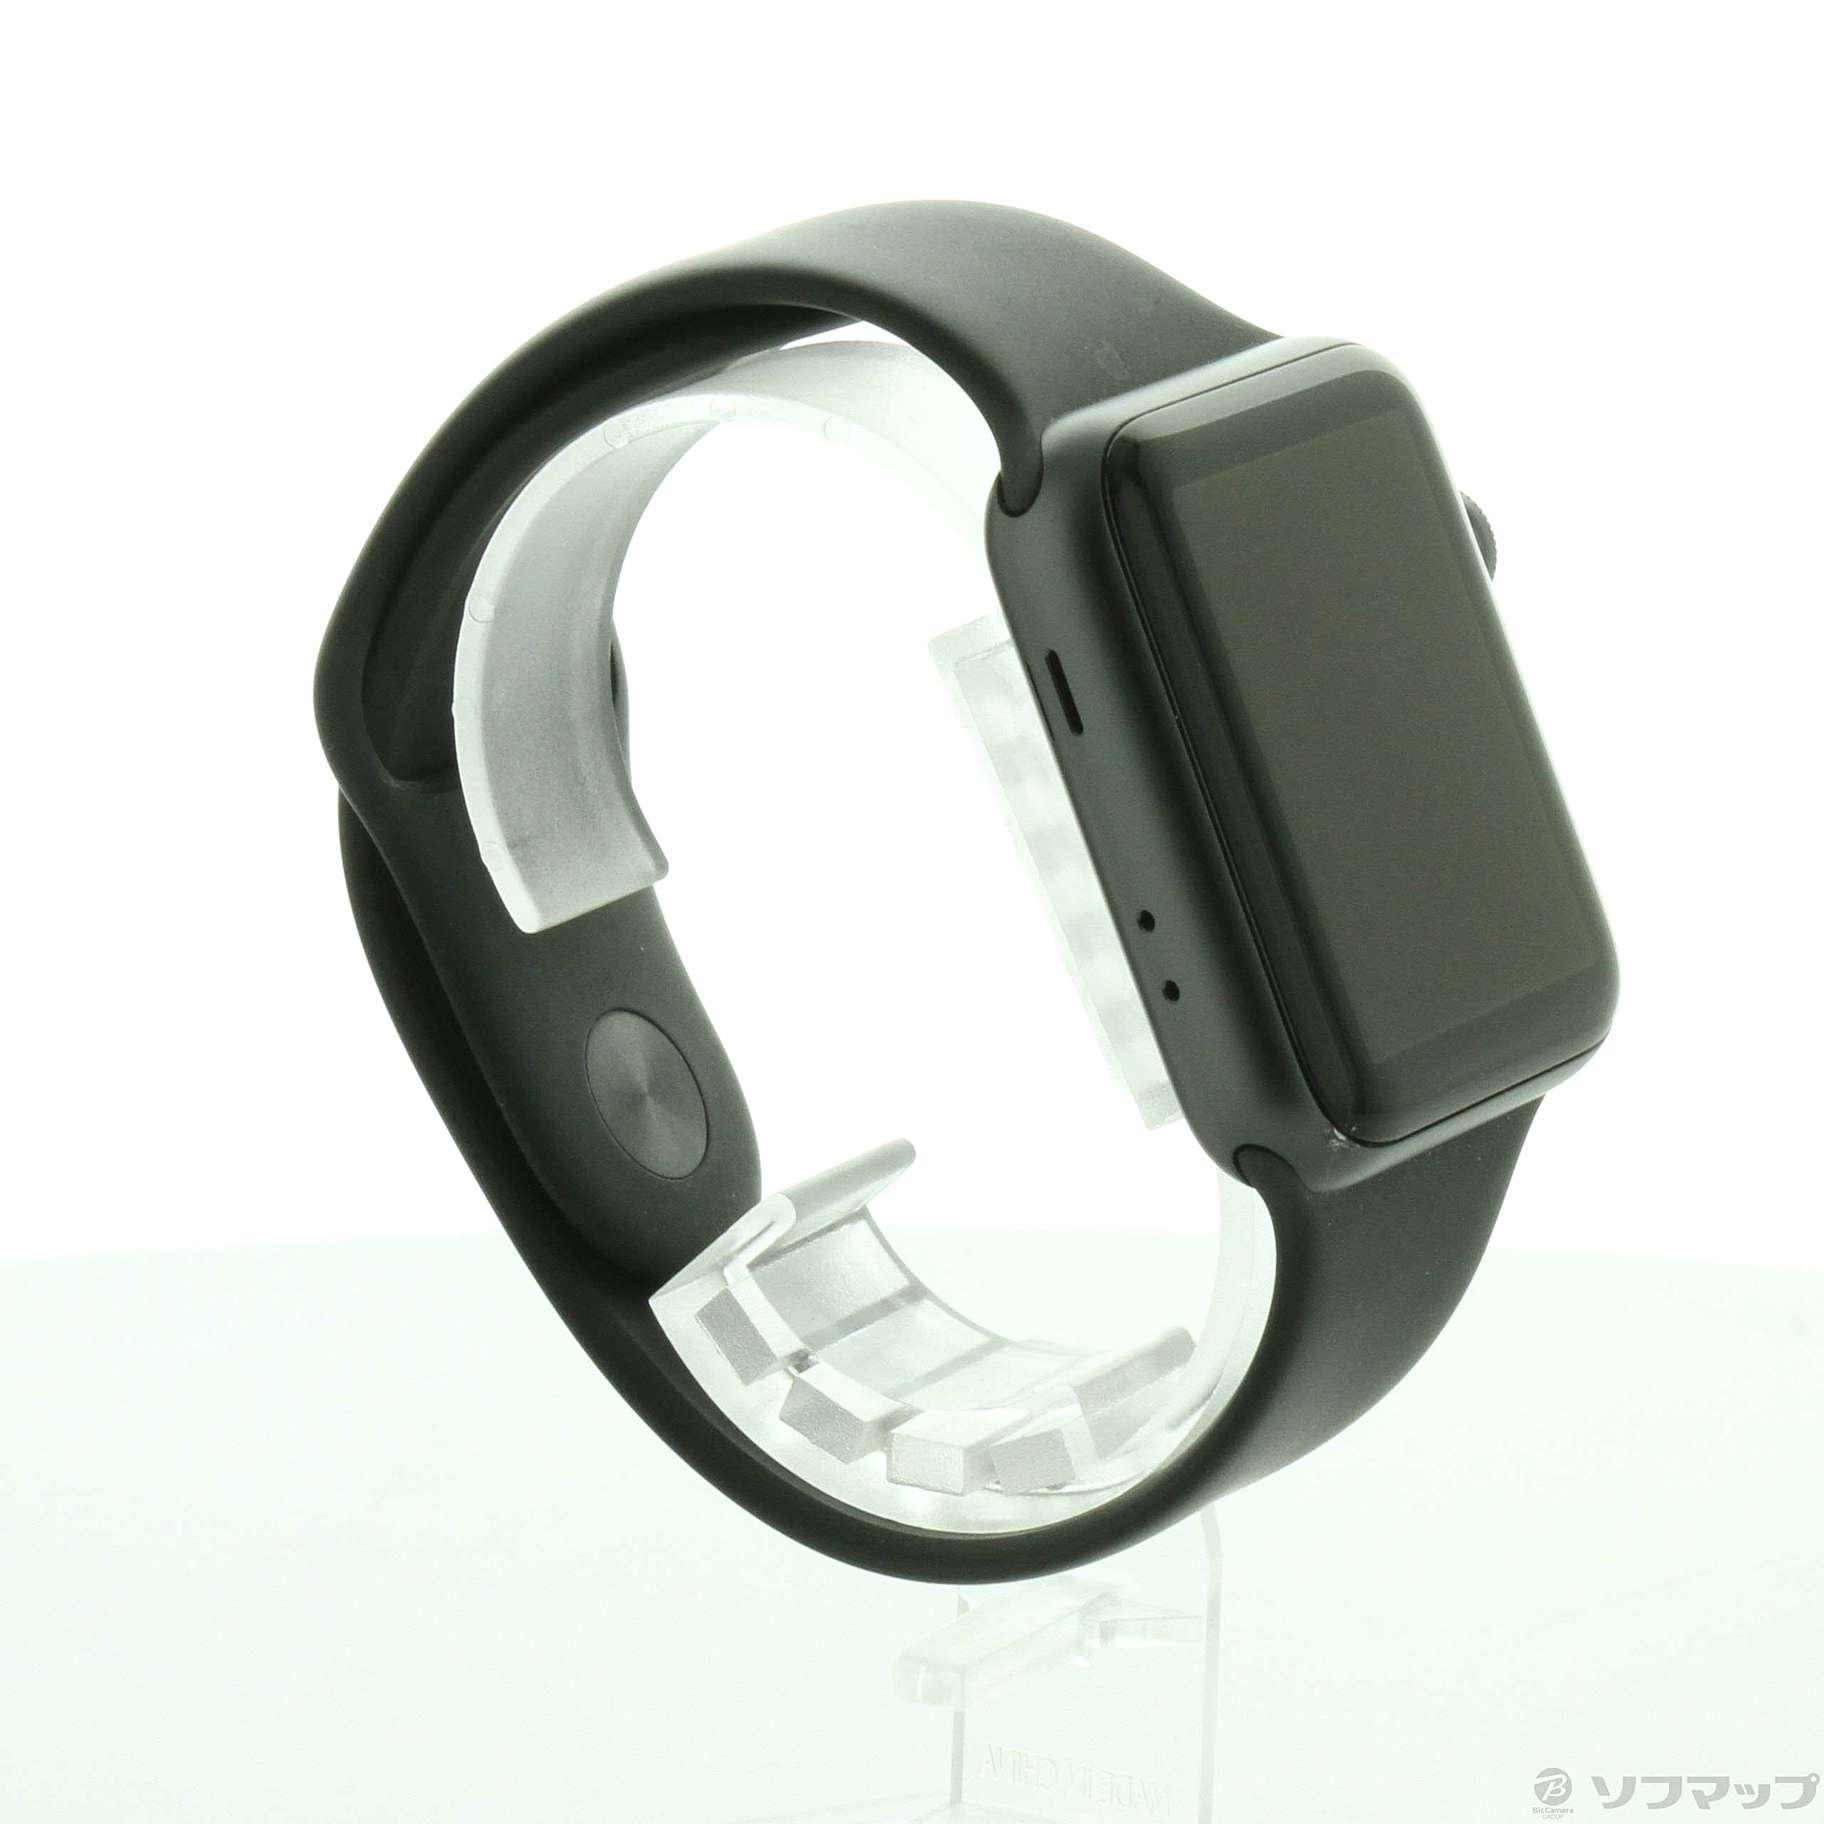 中古品〕 Apple Watch Series 3 GPS 42mm スペースグレイアルミニウム 